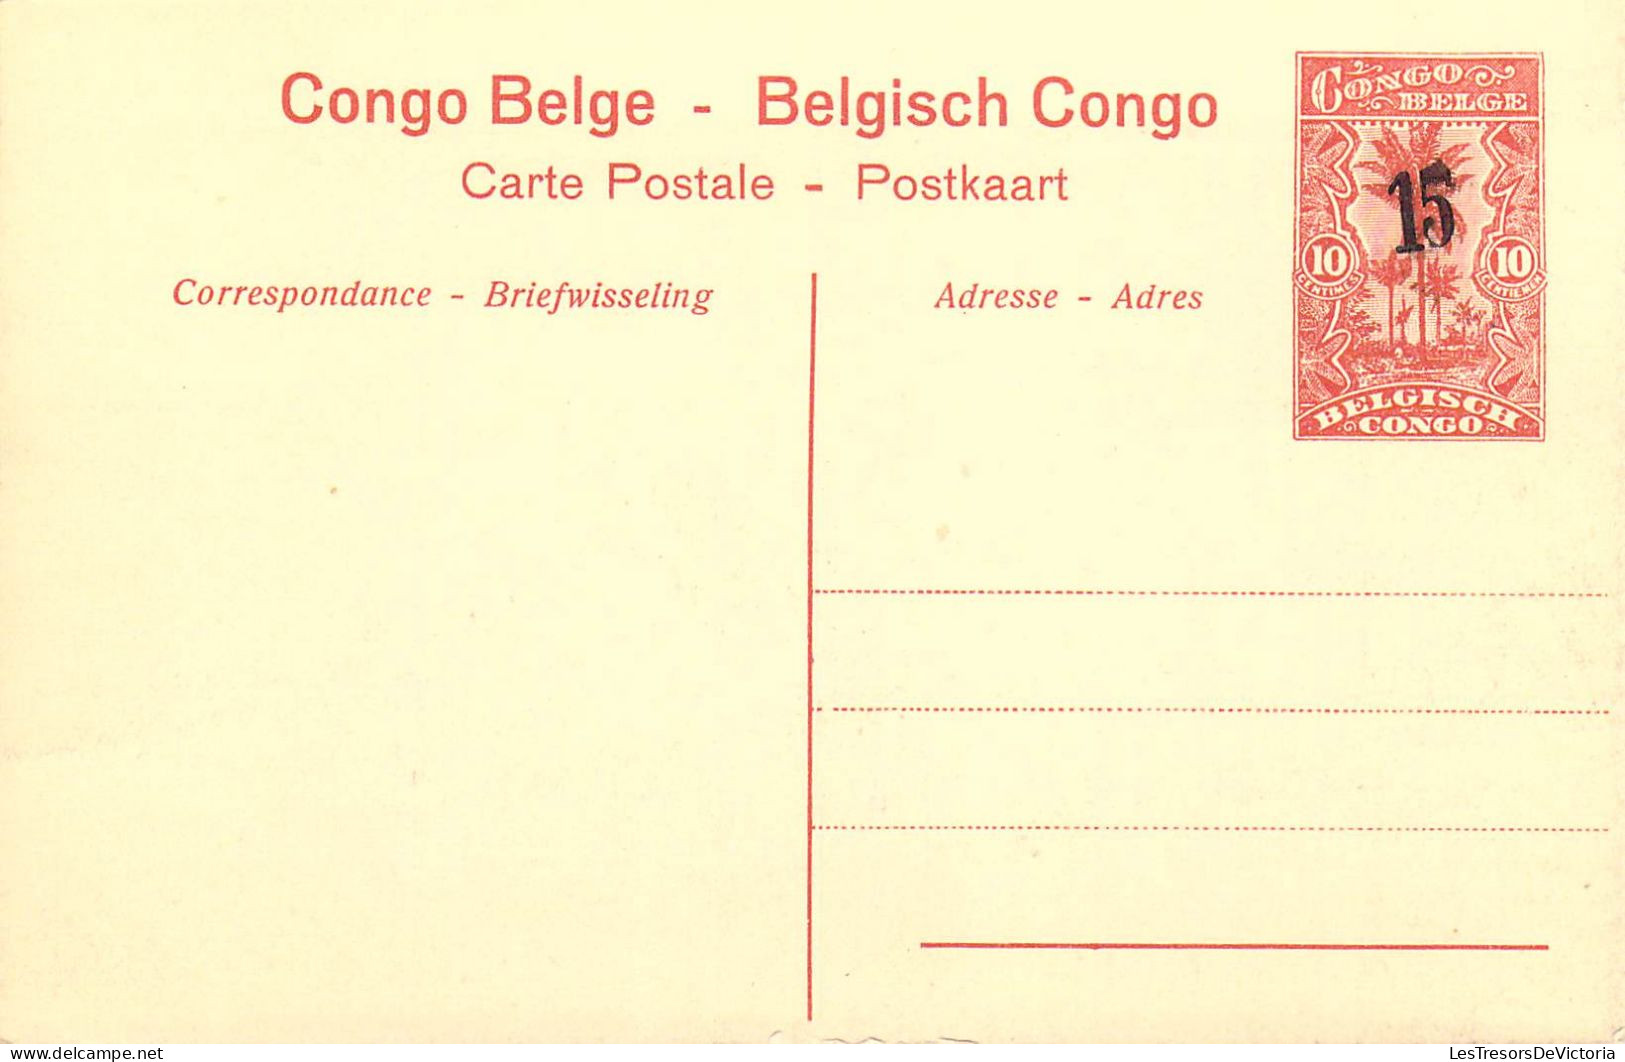 CONGO BELGE - Chutes De La Lubilash Près De Tshala - Carte Postale Ancienne - Belgian Congo